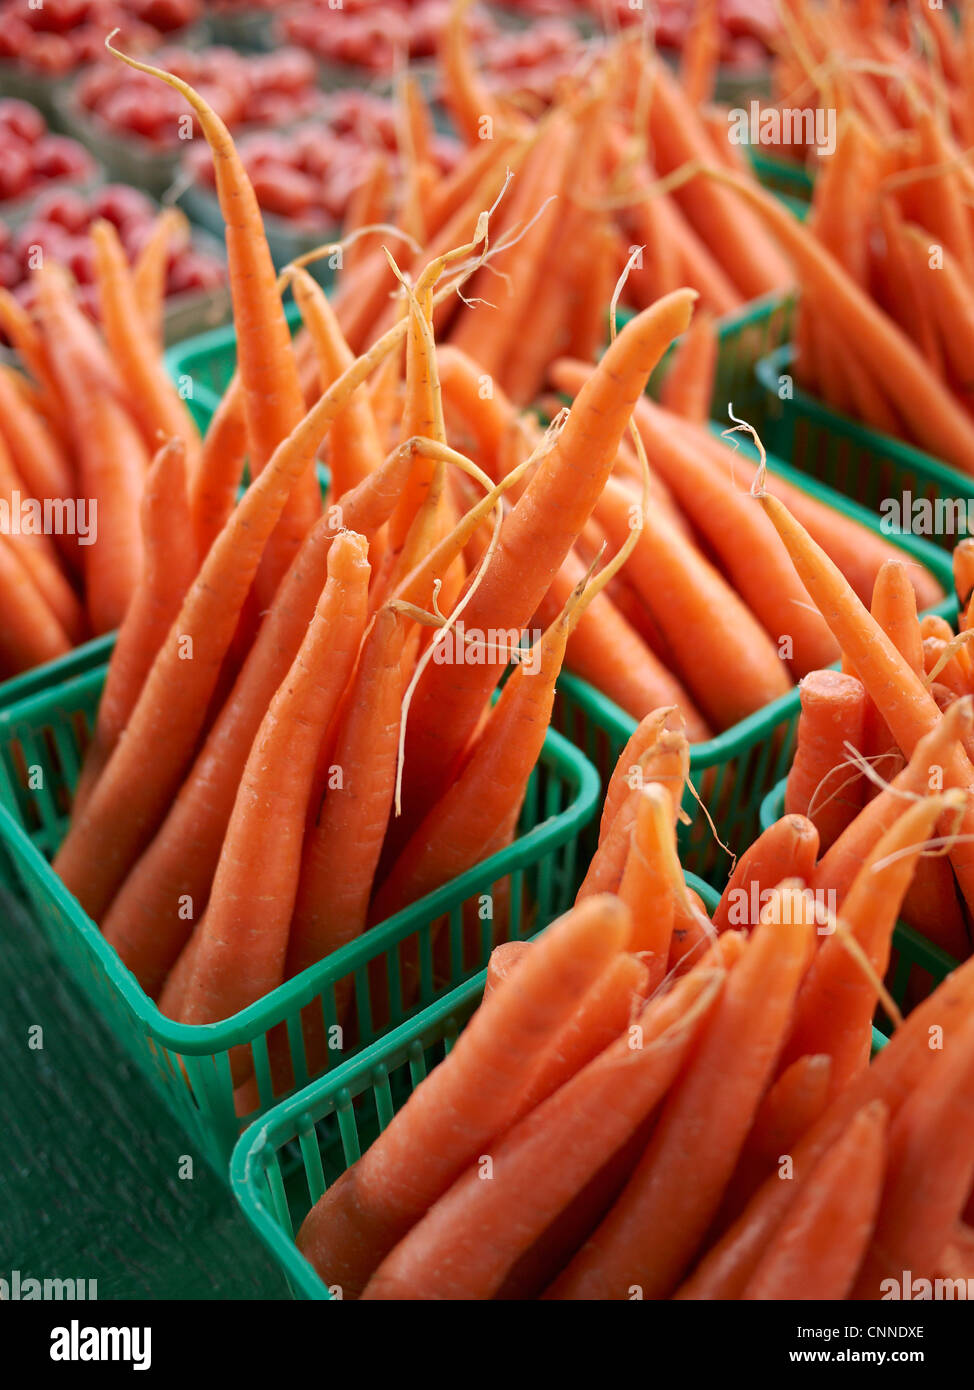 Paniers de carottes à St Jacob's Farmers' Market, St Jacobs, Ontario, Canada Banque D'Images